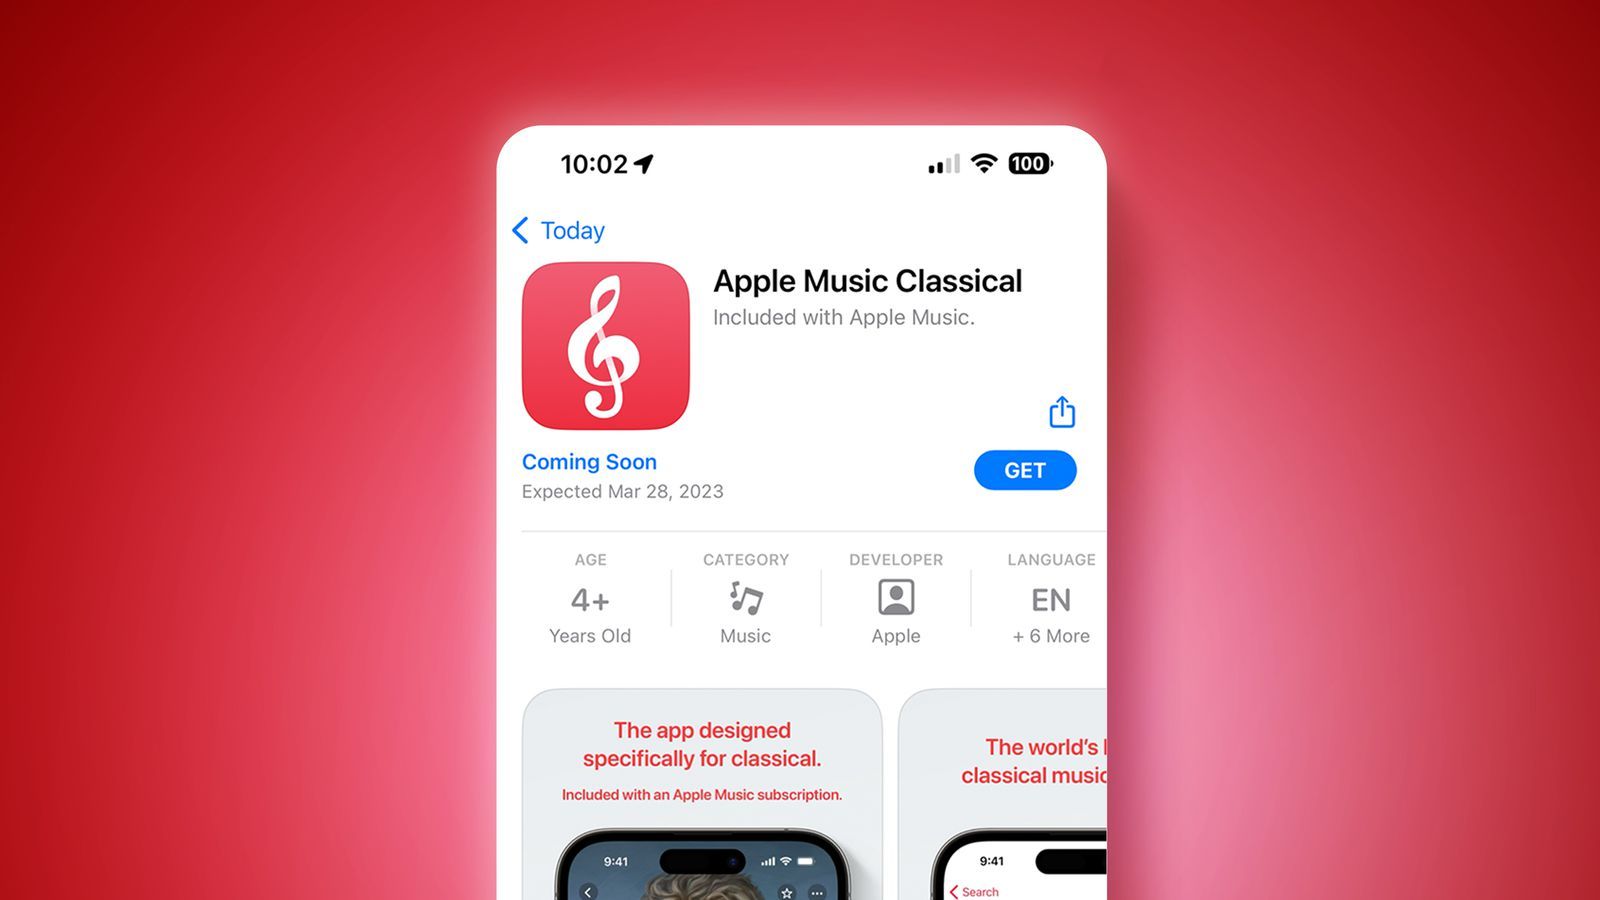 Приложение Apple Music Classical стало доступно для некоторых пользователей